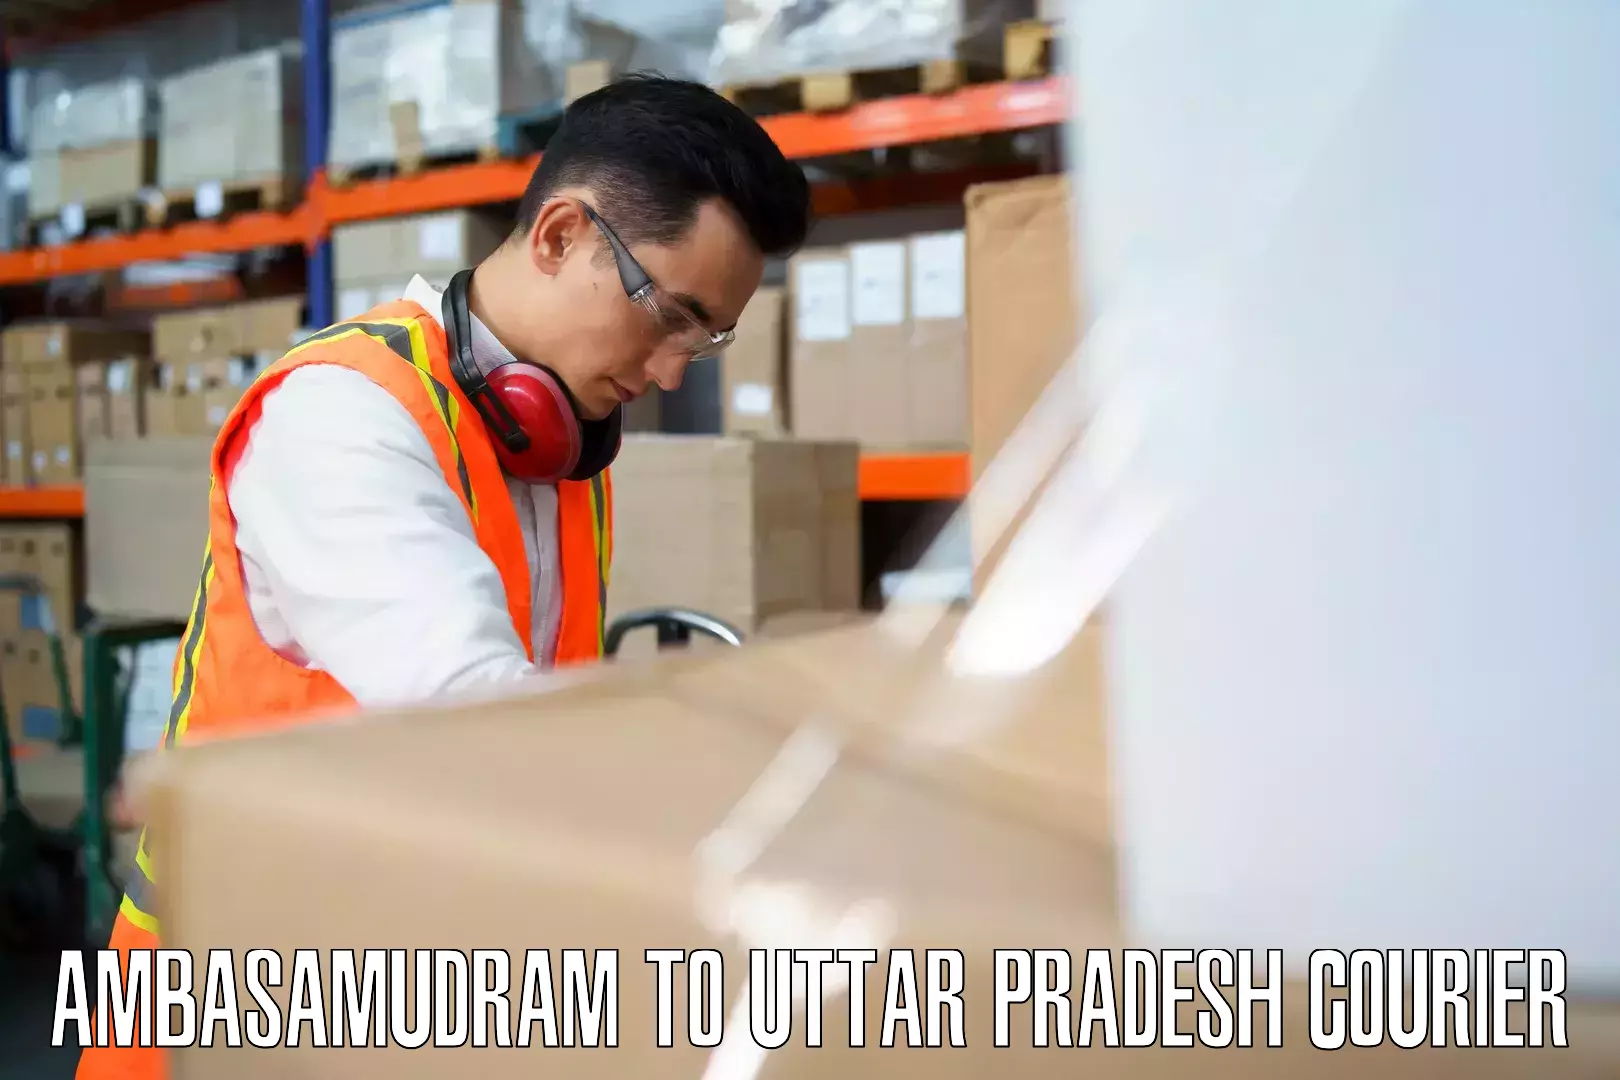 Baggage courier optimization in Ambasamudram to Kurebhar